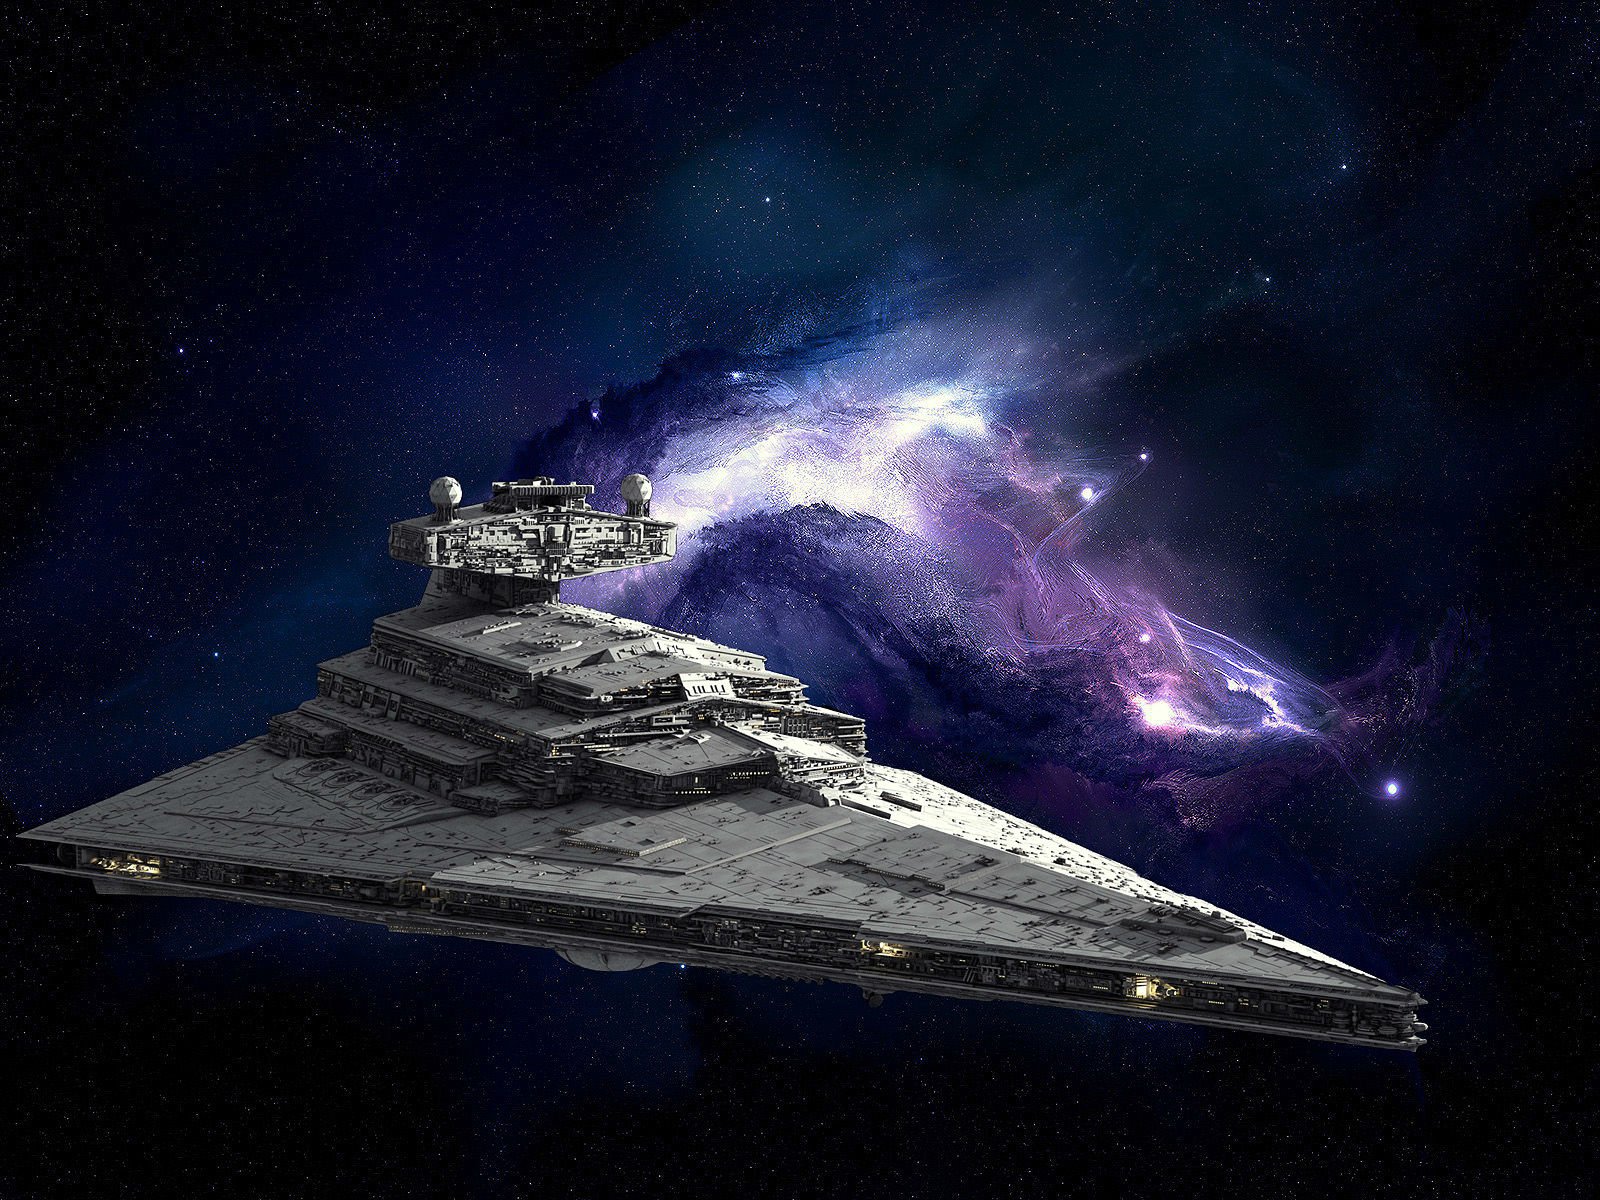 Star Wars Spaceship Pictures - Star Destroyer Star Wars Spaceship Sci ...